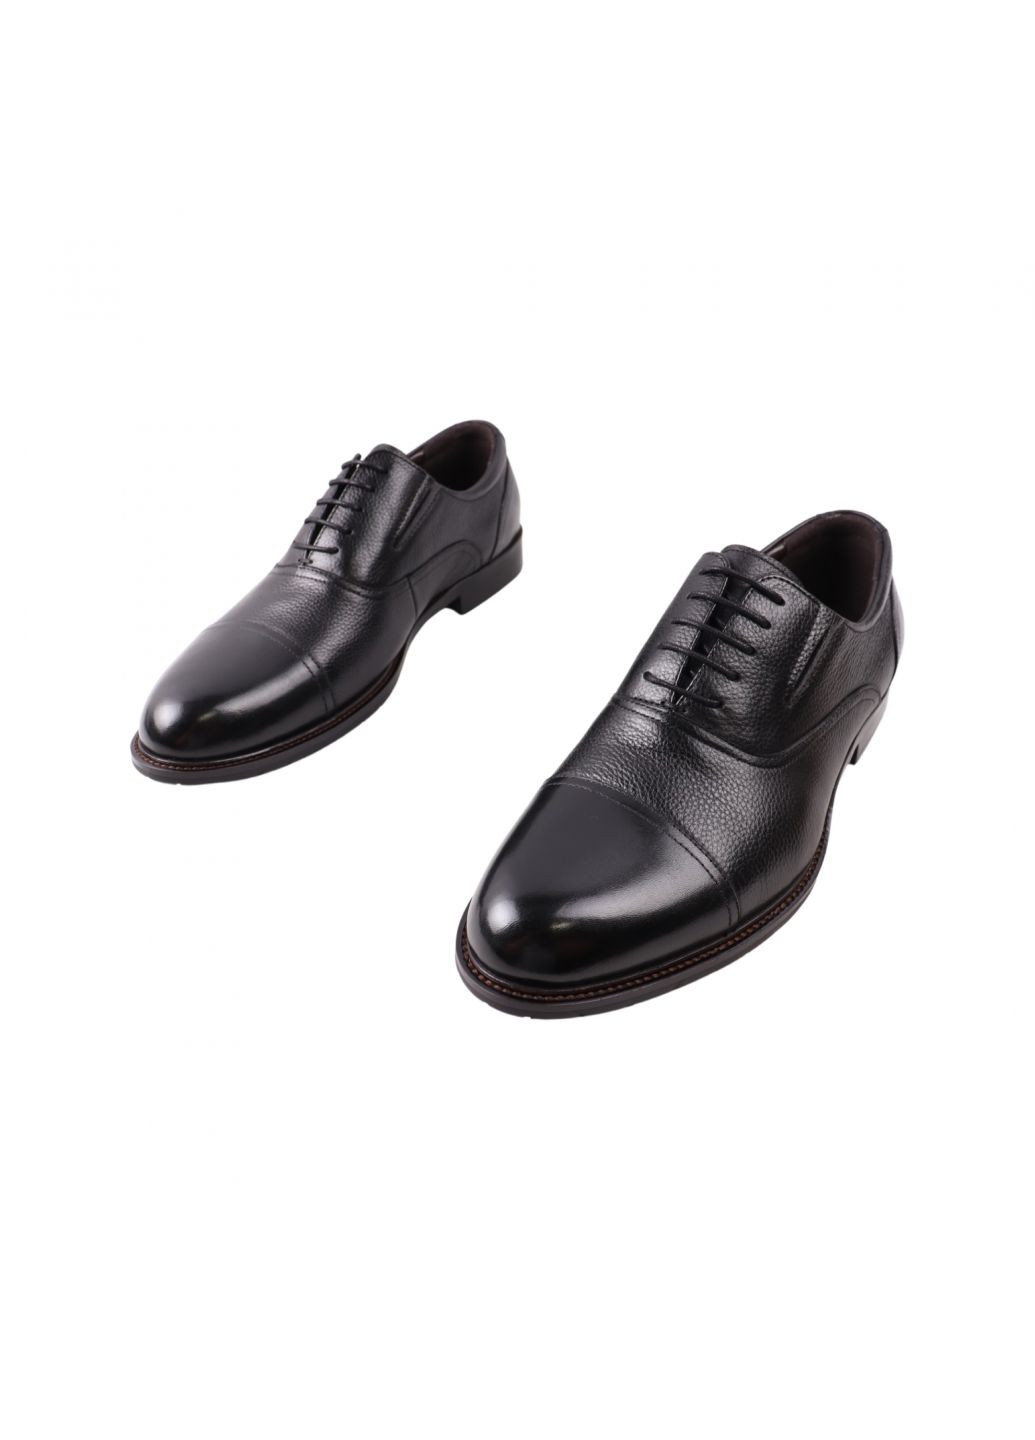 Туфлі чоловічі Lido Marinozi чорні натуральна шкіра Lido Marinozzi 316-23dt (268030447)